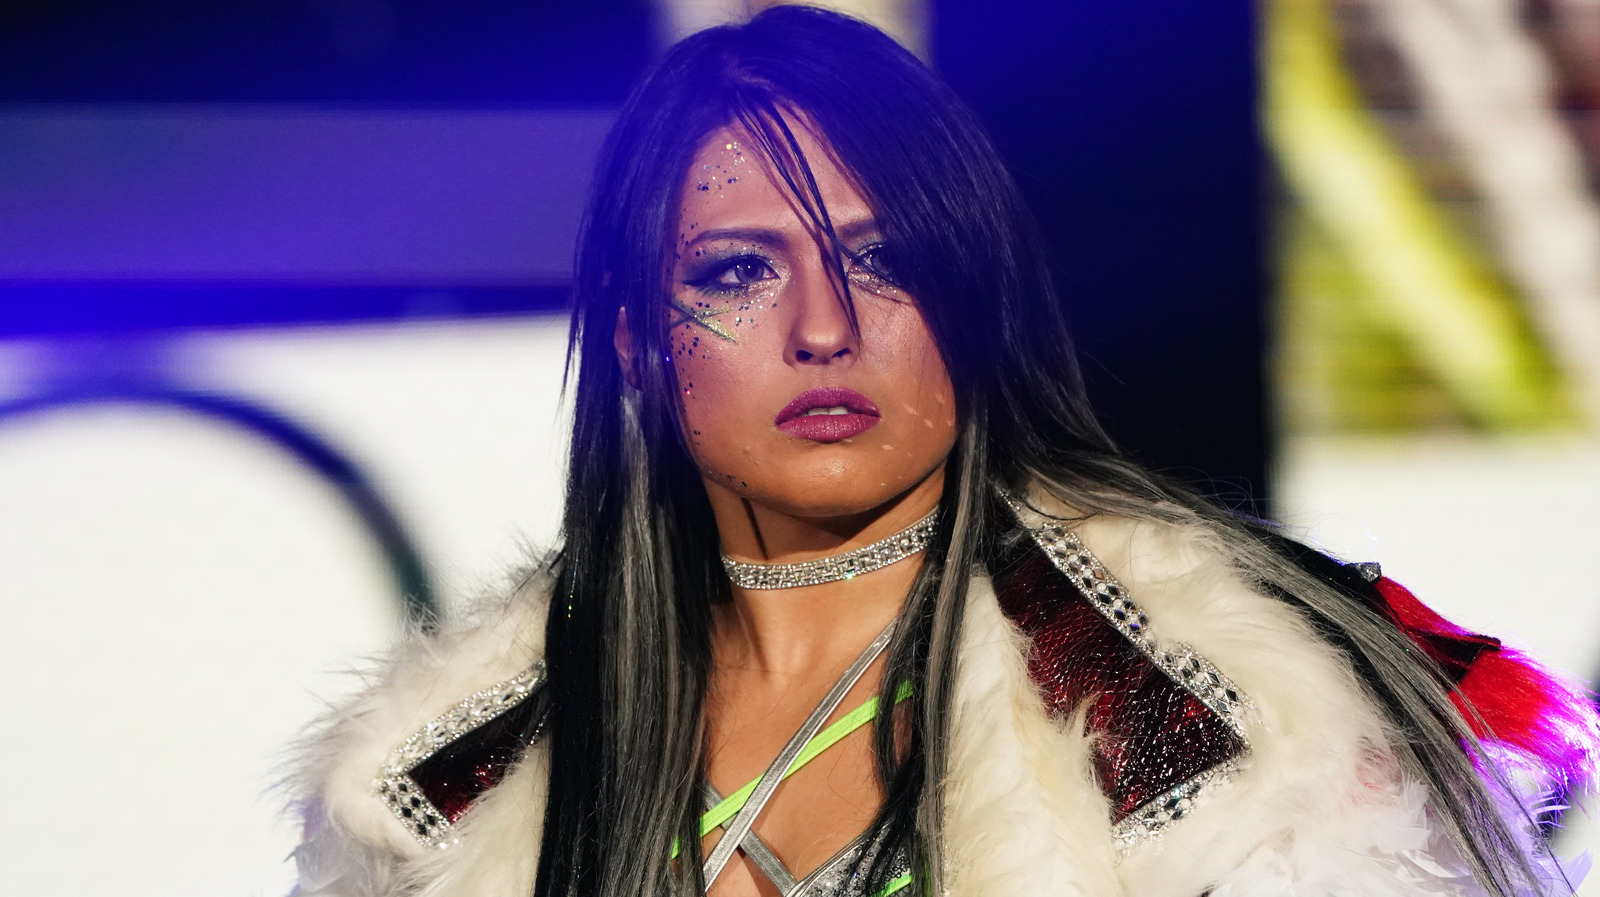 Aktualizacja za kulisami dotycząca statusu Julii w WWE